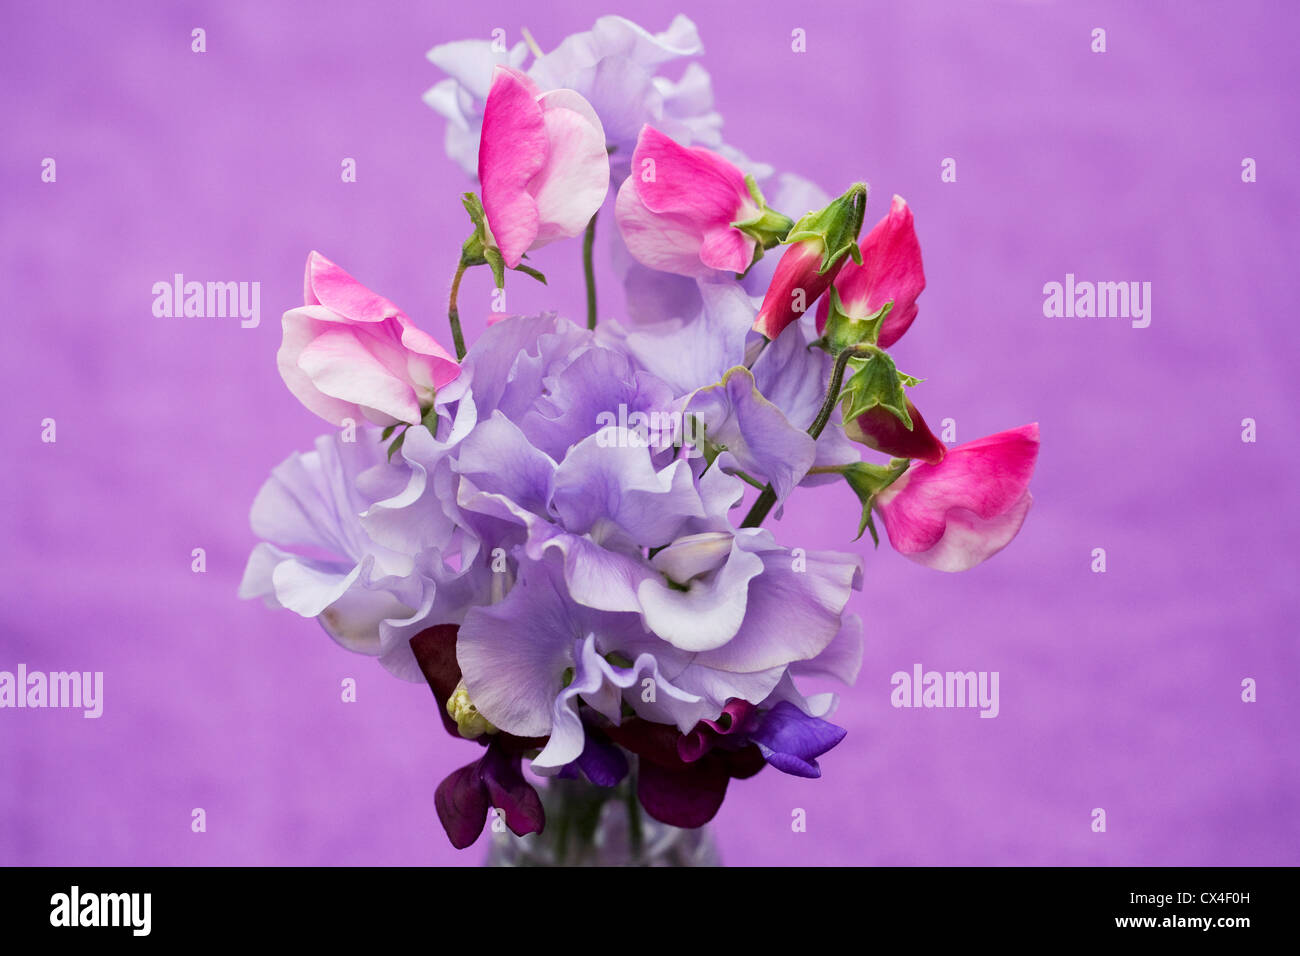 Lathyrus odoratus. Pois de fleurs dans un vase en verre sur un fond lilas. Banque D'Images